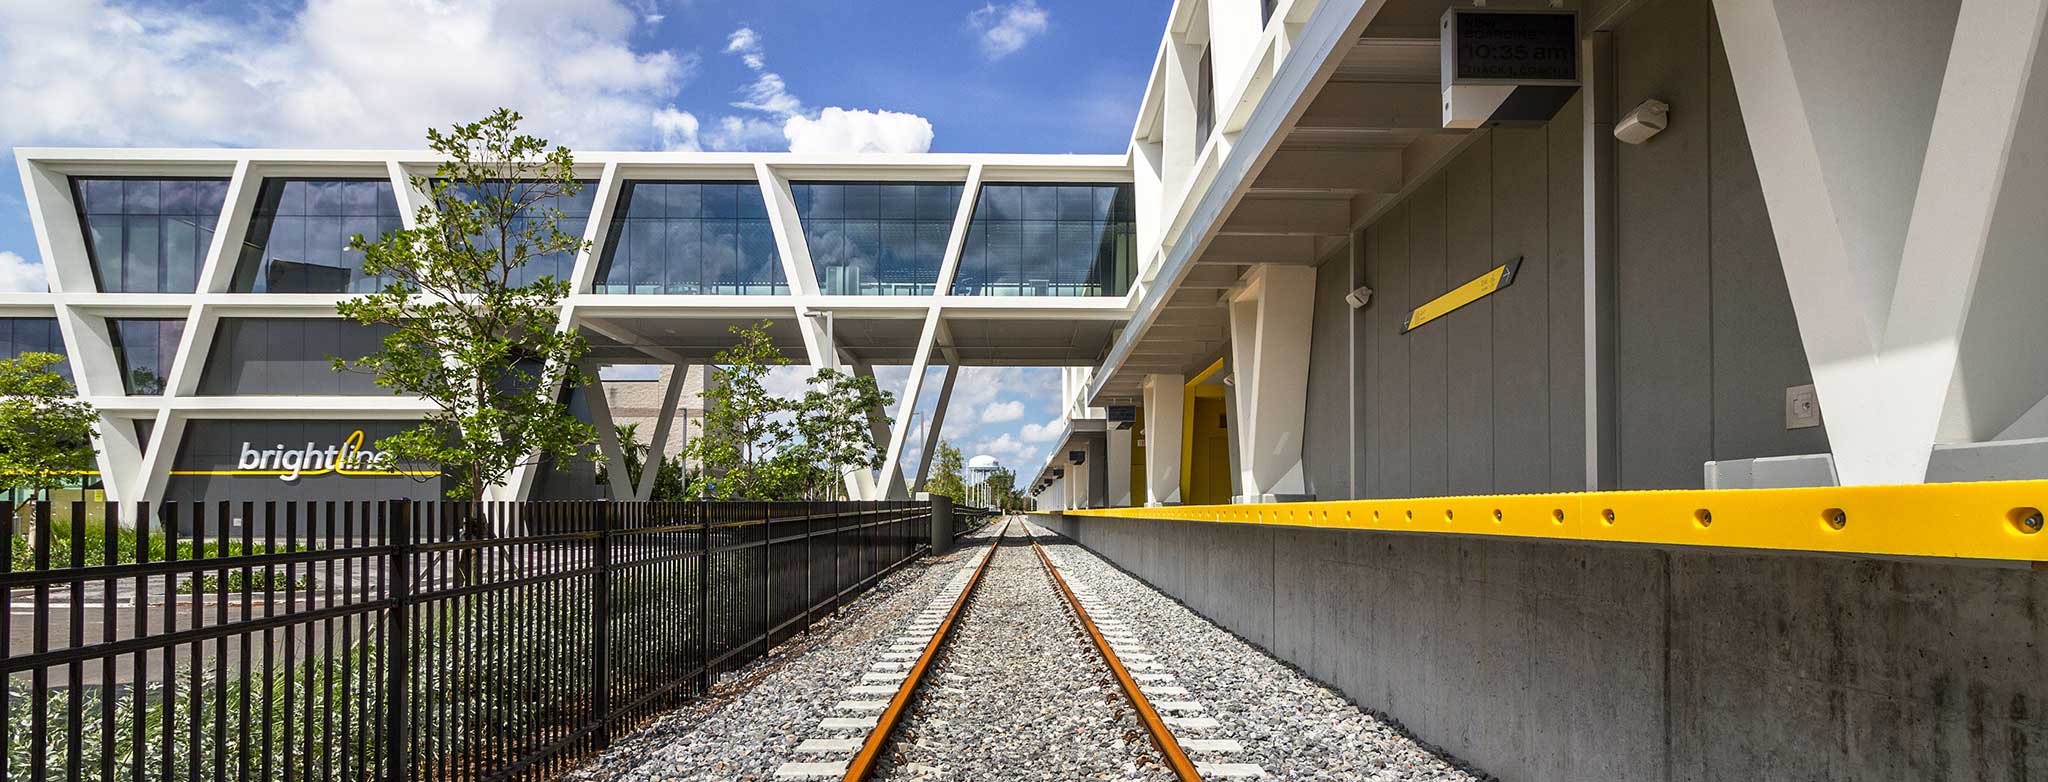 Brightline Station Fort Lauderdale